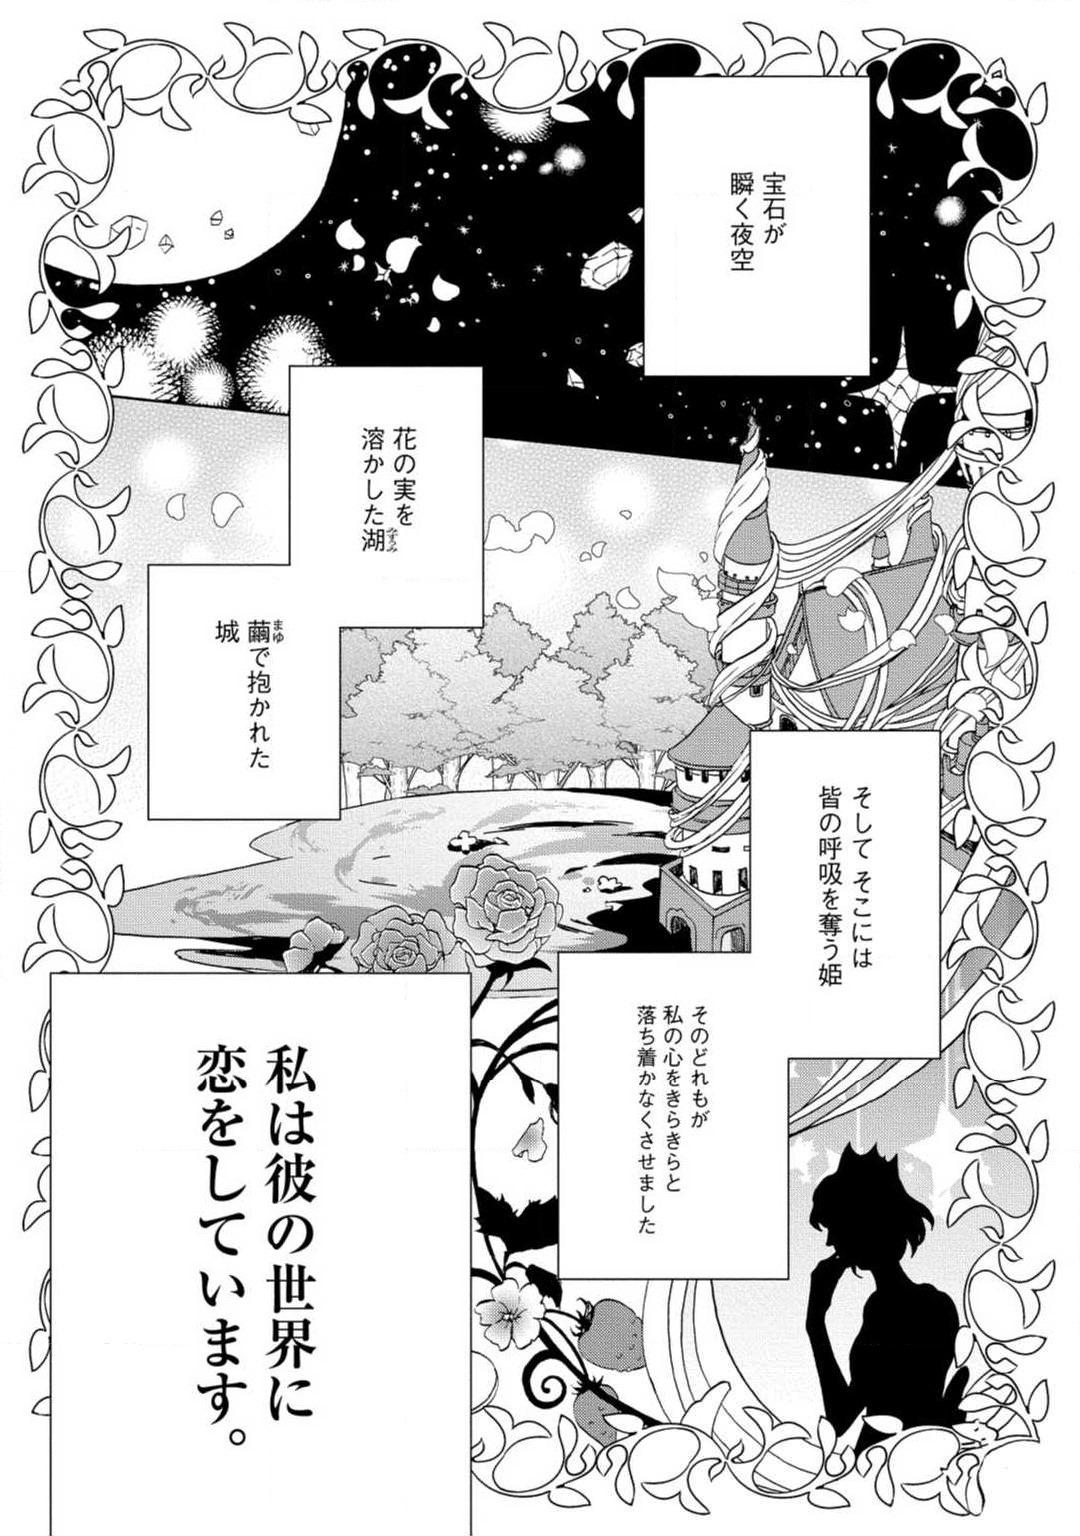 Maledom [Uri] Yumemiru Henshuu-sha to Mukiryoku Shousetsuka 1-11 Teen - Picture 2